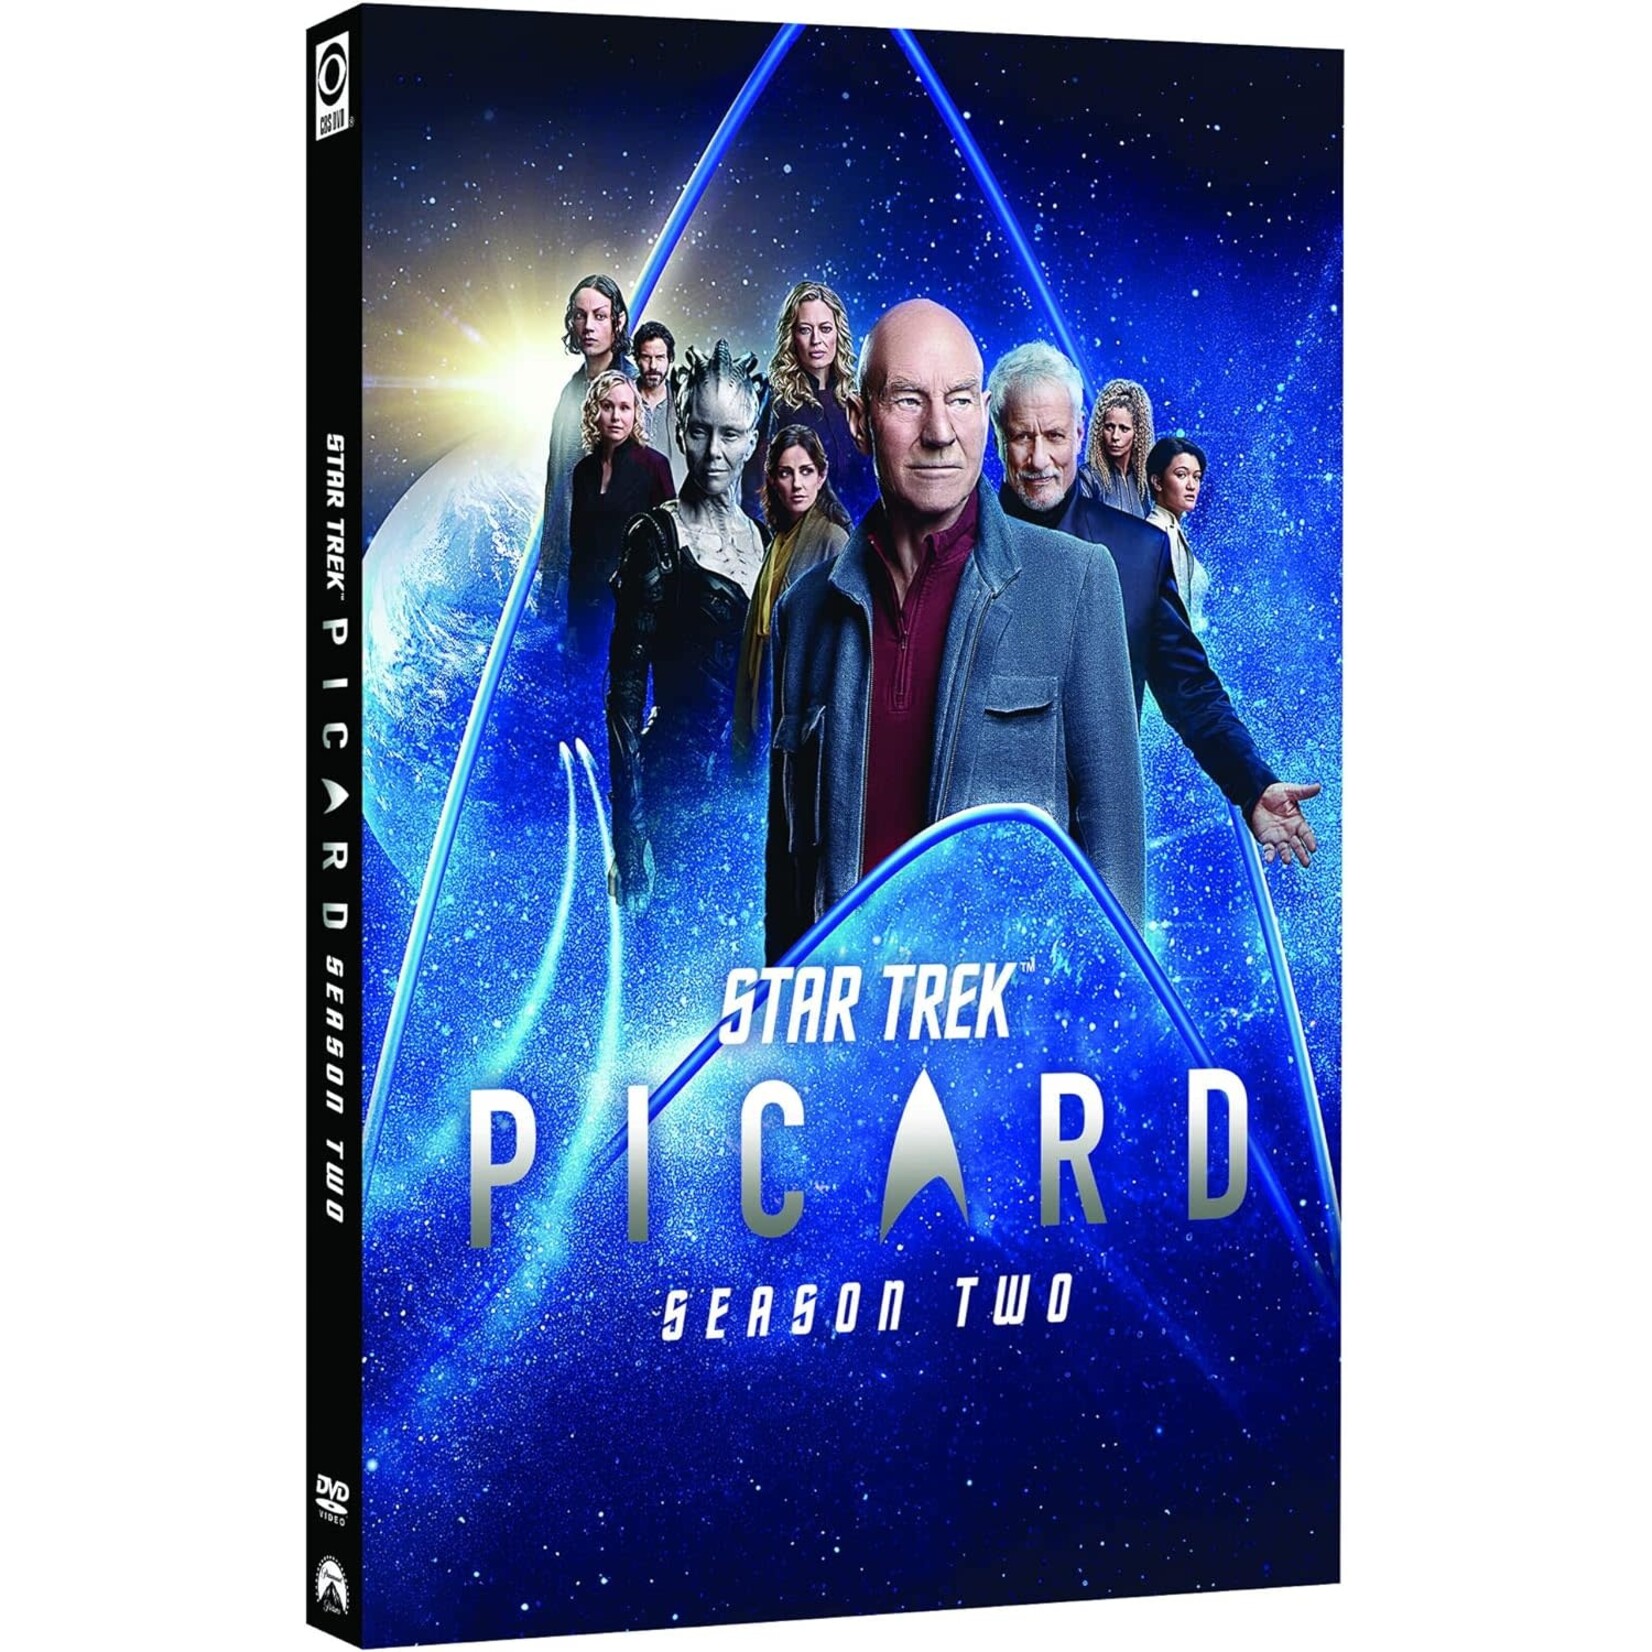 Star Trek: Picard - Season 2 [USED DVD]